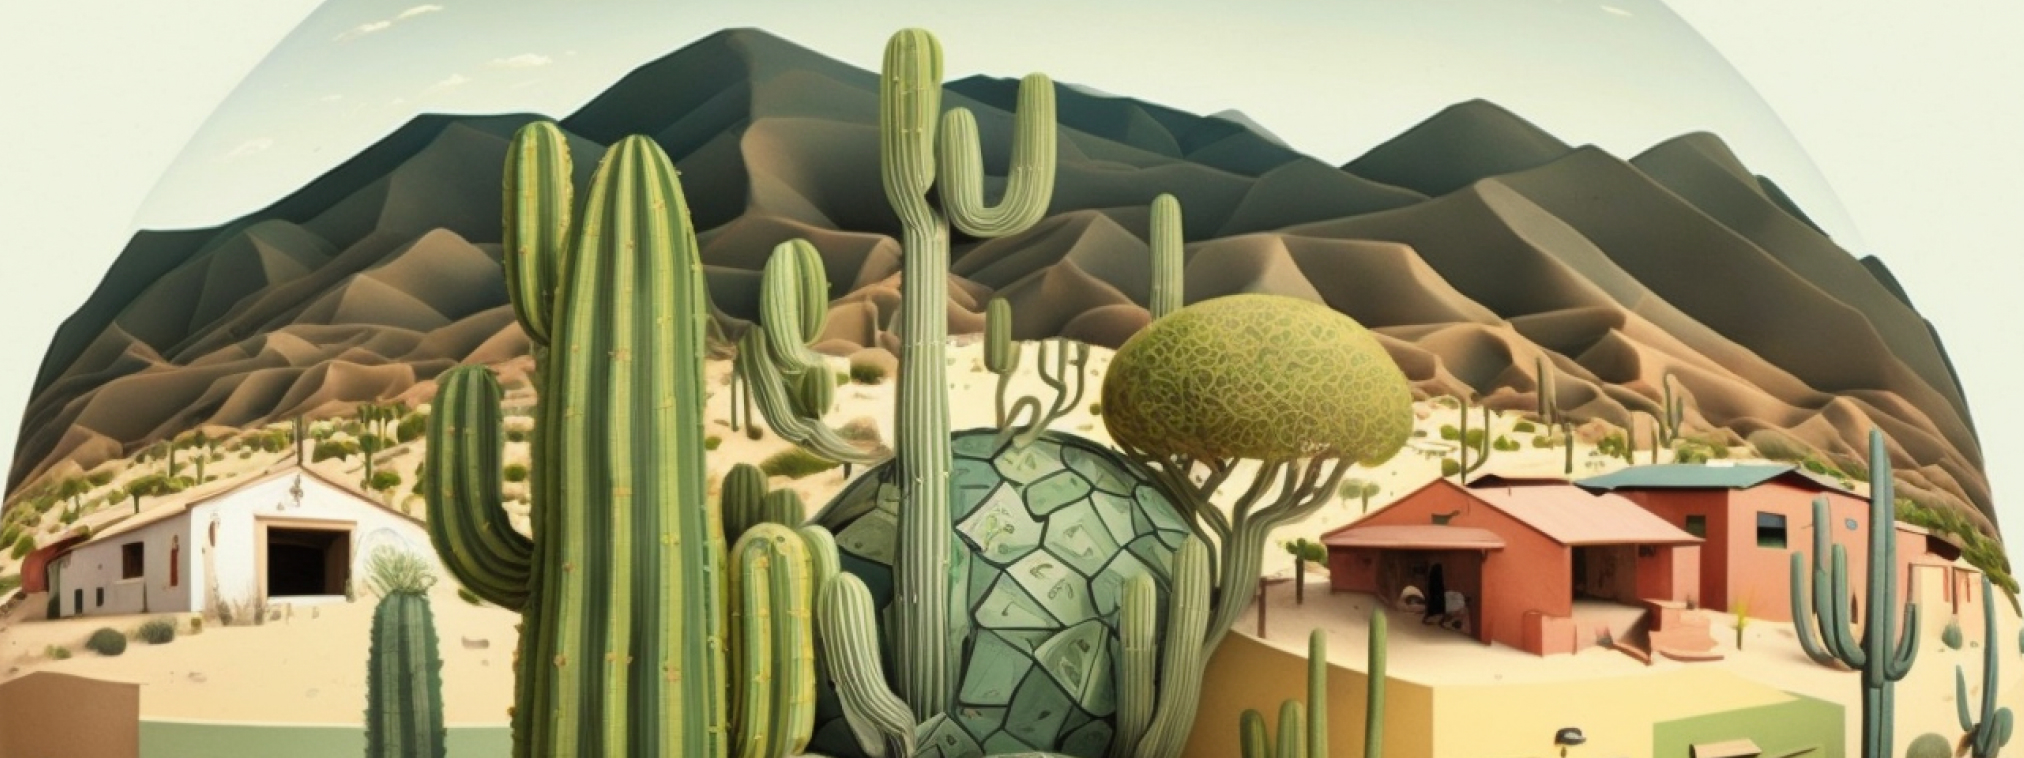 Imagen hecha con inteligencia artificial. Aparece un pueblo entre montañas en el desierto con cactus. Las comunidades locales ante los límites planetarios.